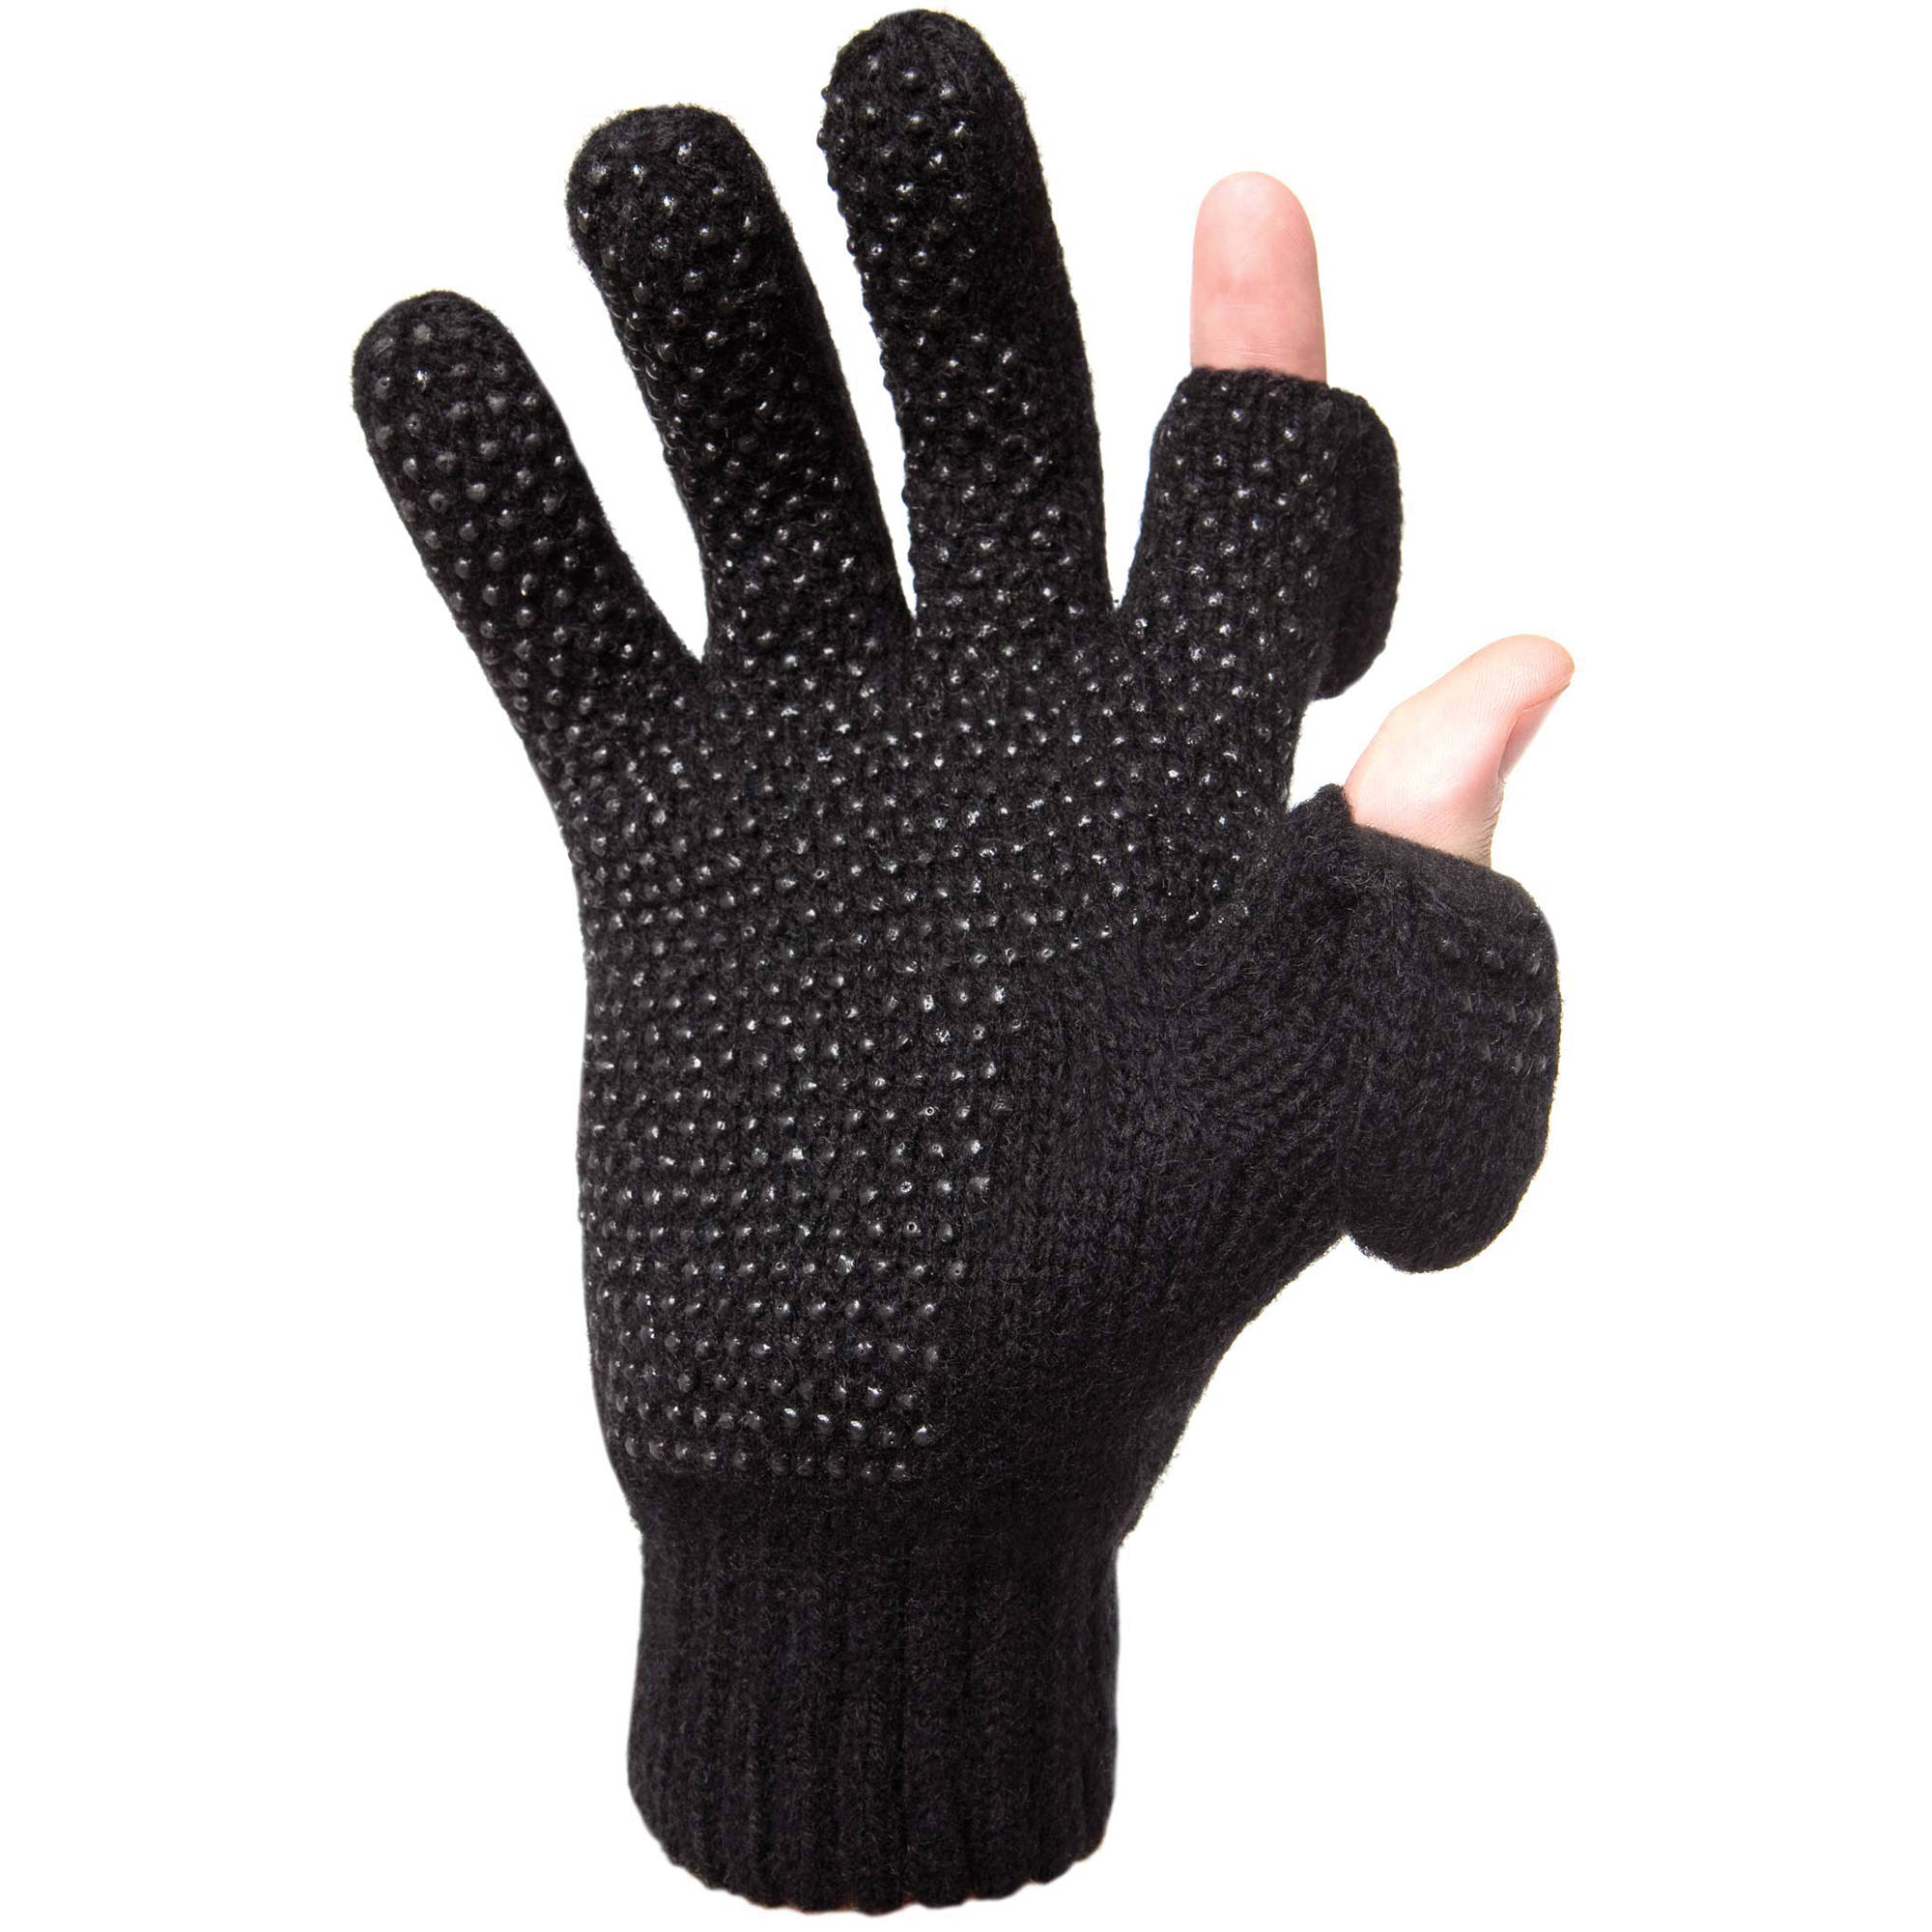 ragg gloves